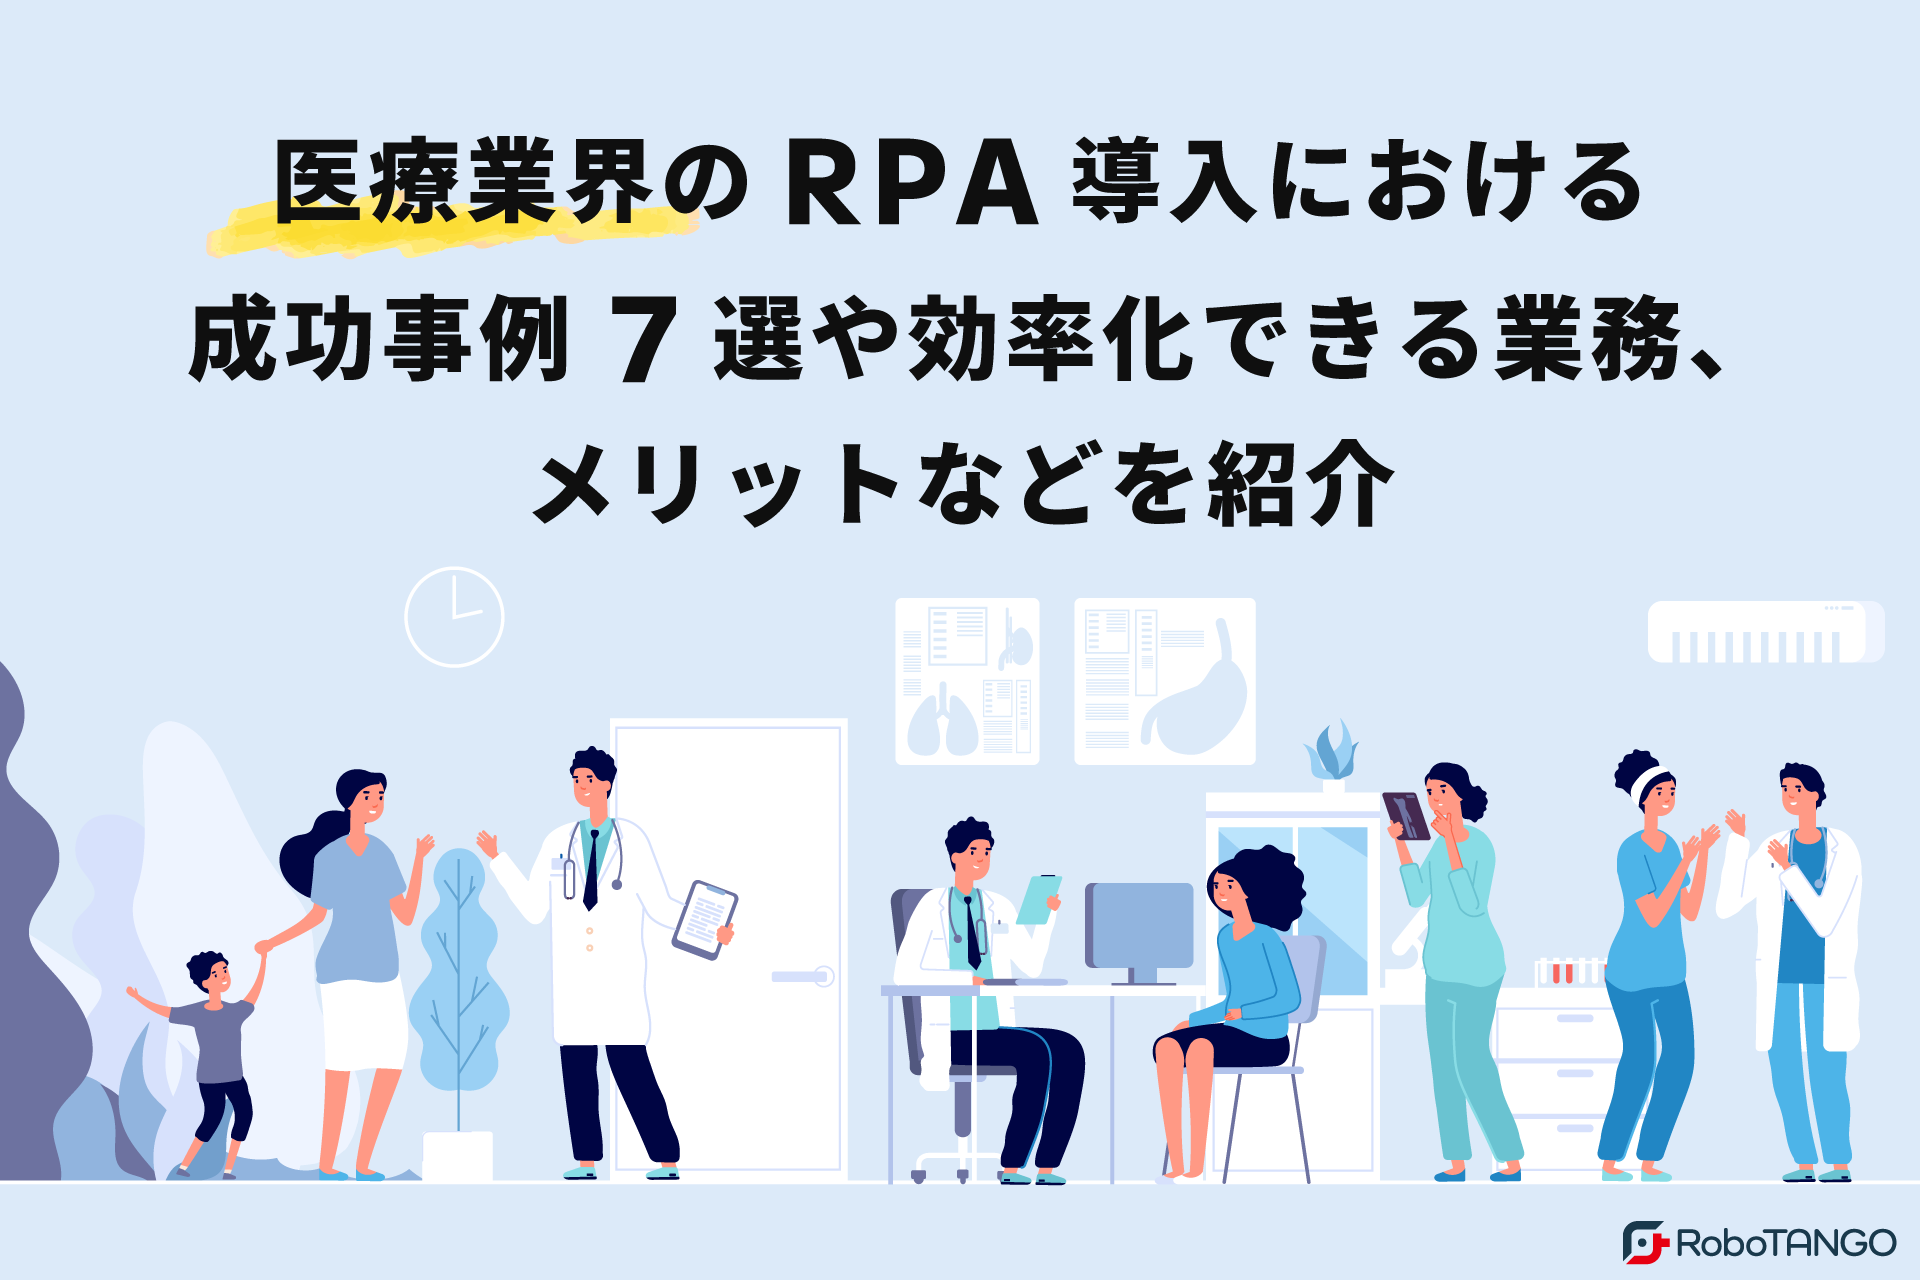 医療業界（病院・診療所）のRPA導入における成功事例7選や効率化できる業務、メリットなどを紹介